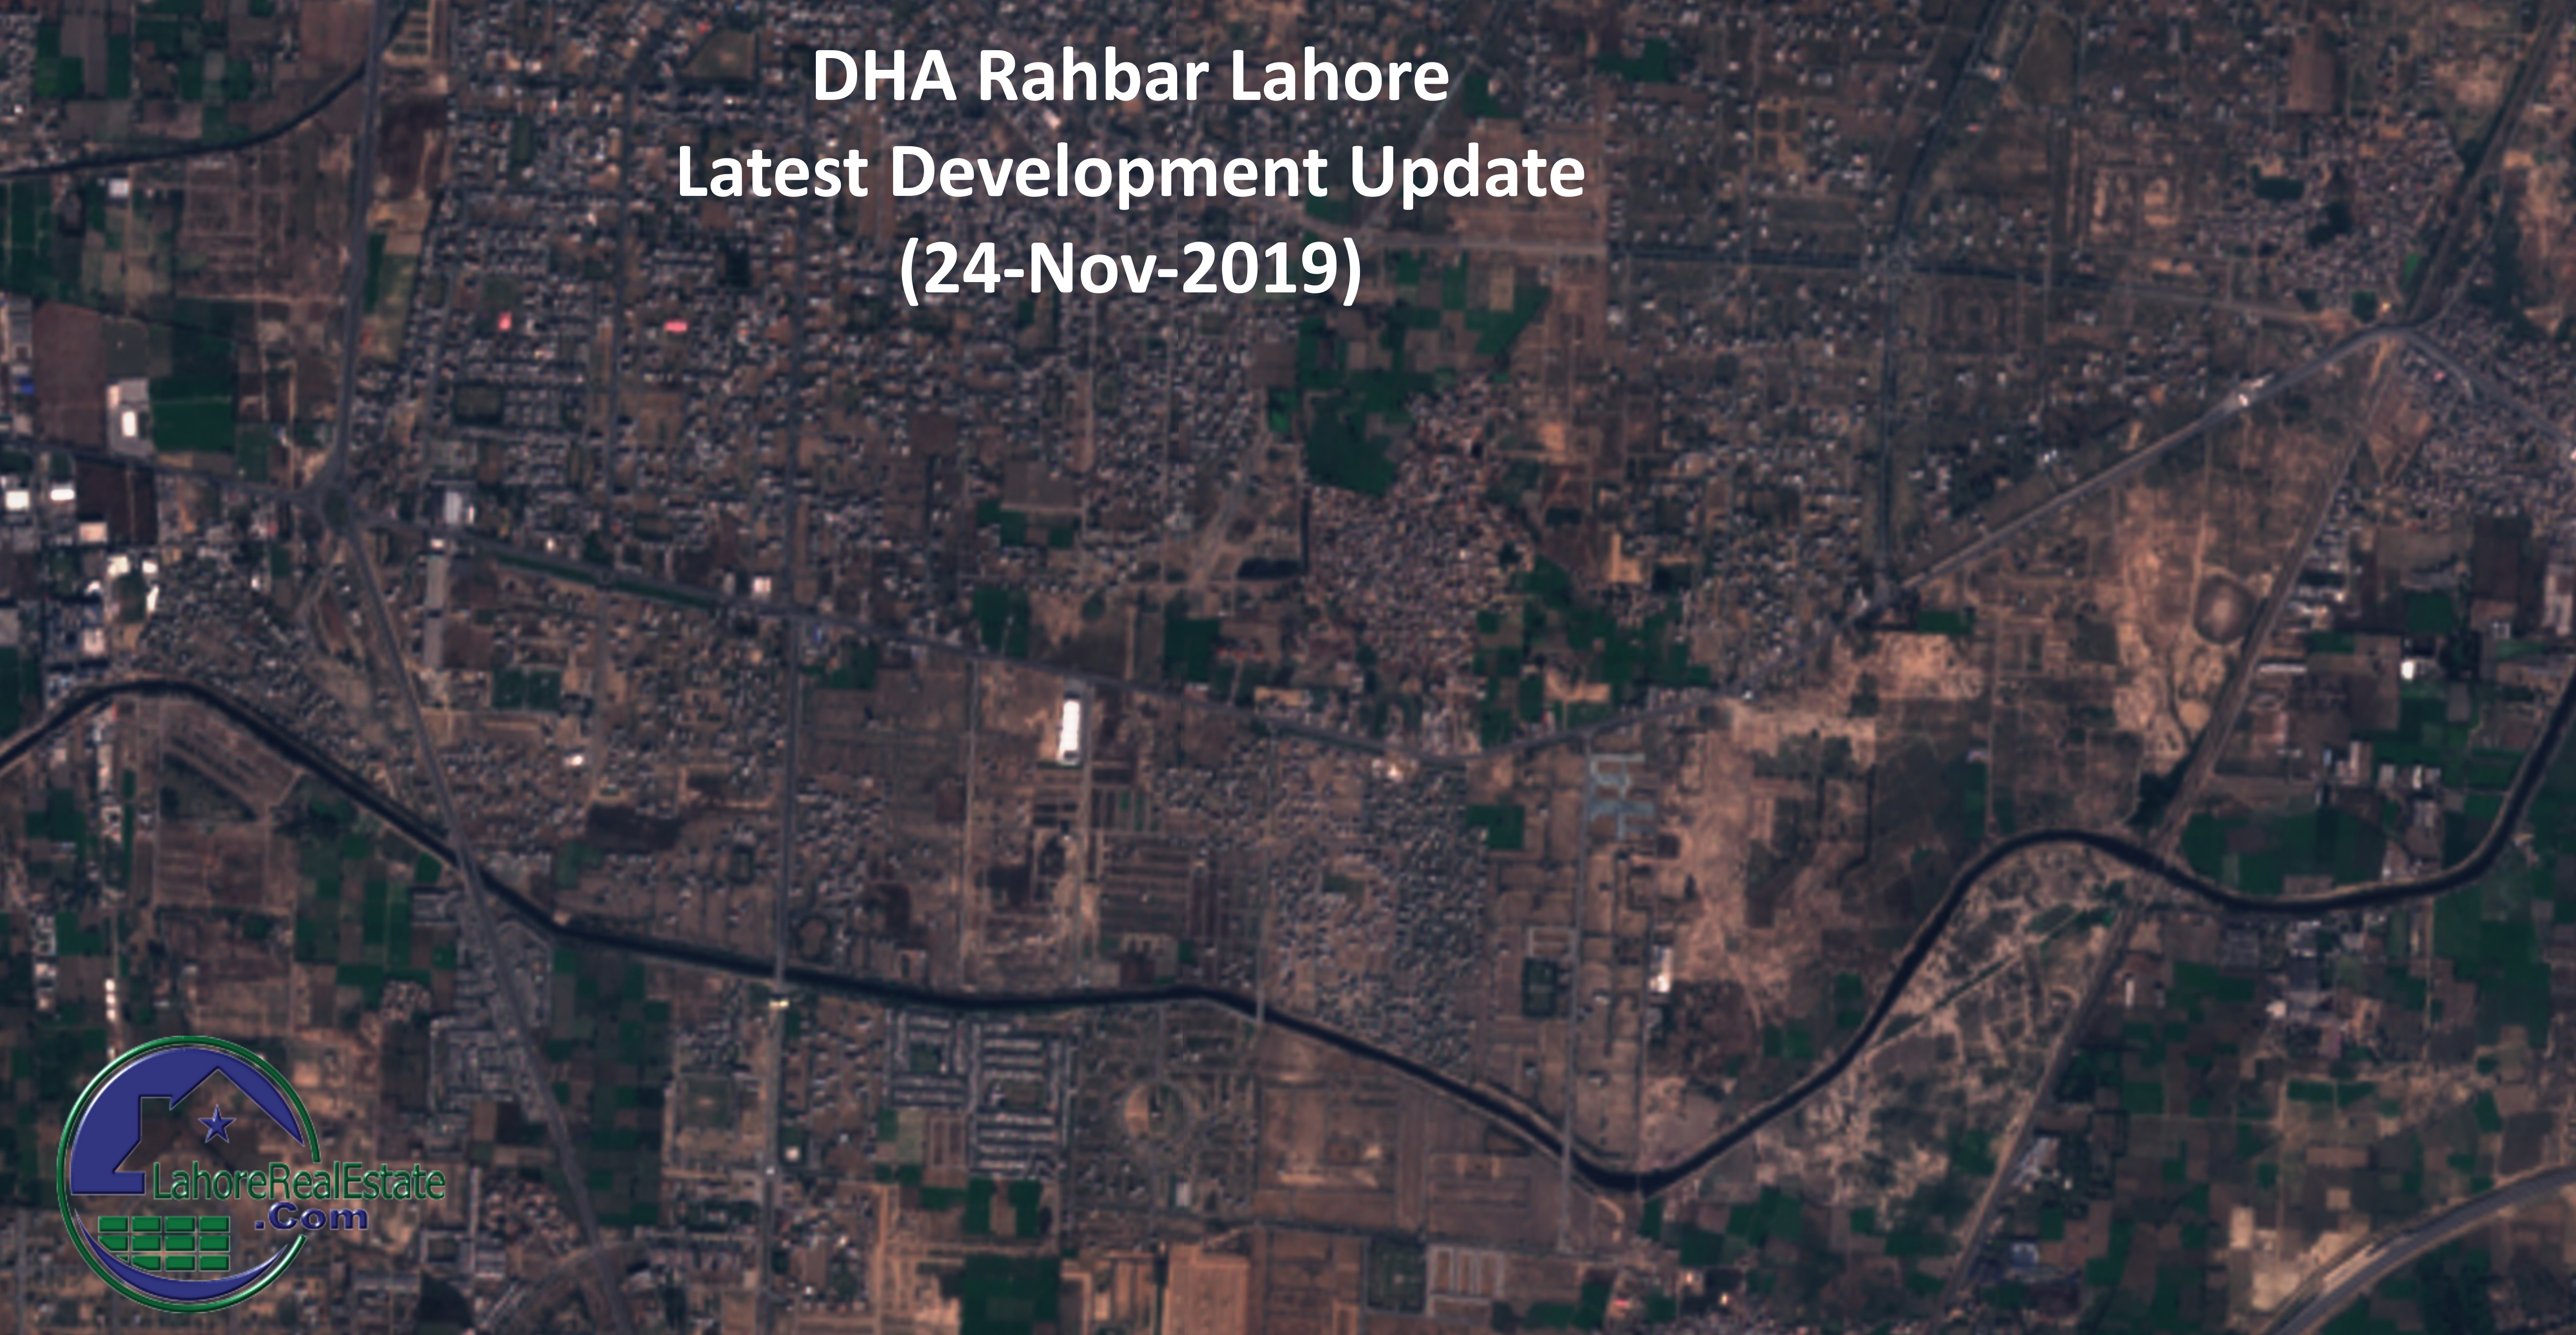 DHA Rahbar Lahore